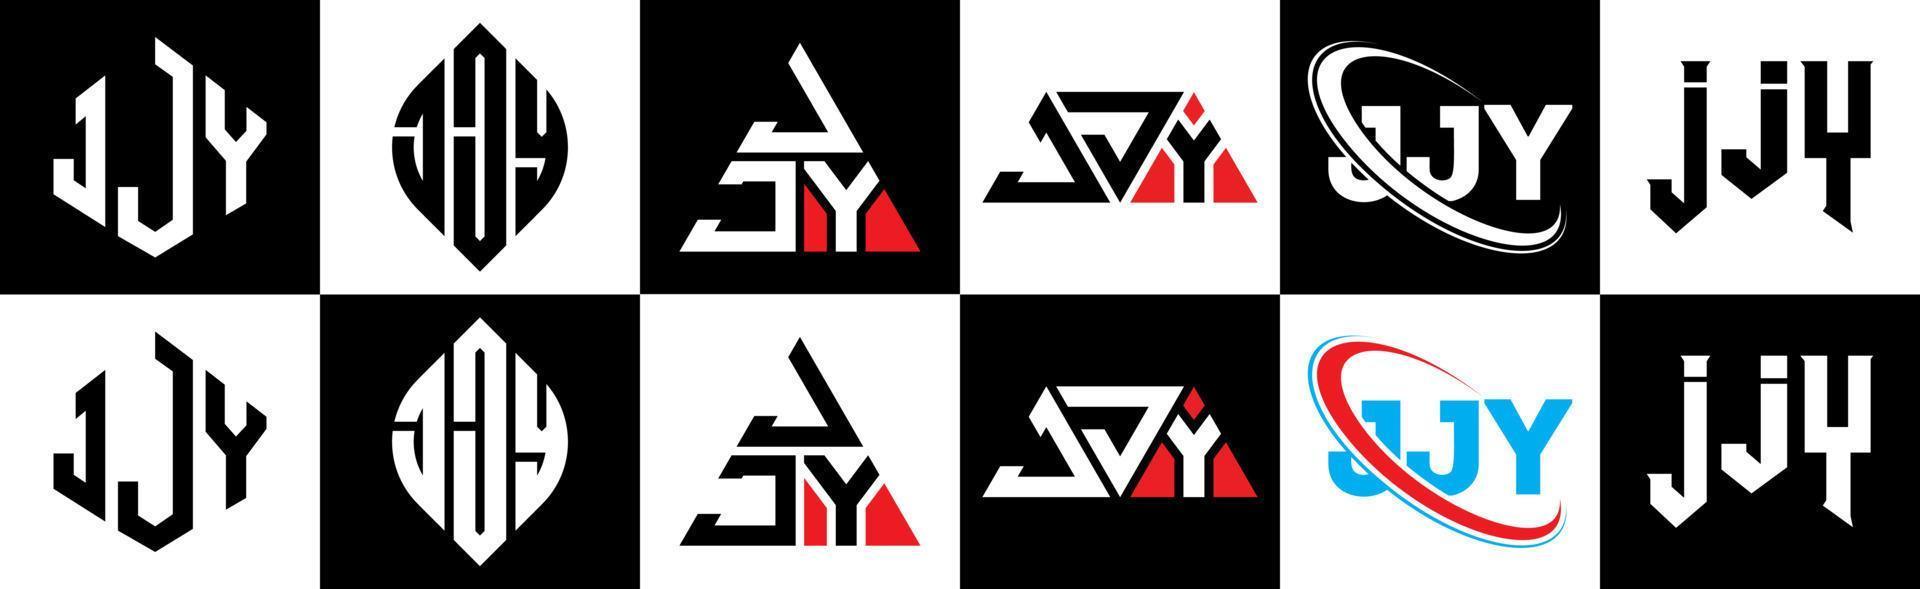 jjy lettera logo design nel sei stile. jjy poligono, cerchio, triangolo, esagono, piatto e semplice stile con nero e bianca colore variazione lettera logo impostato nel uno tavola da disegno. jjy minimalista e classico logo vettore